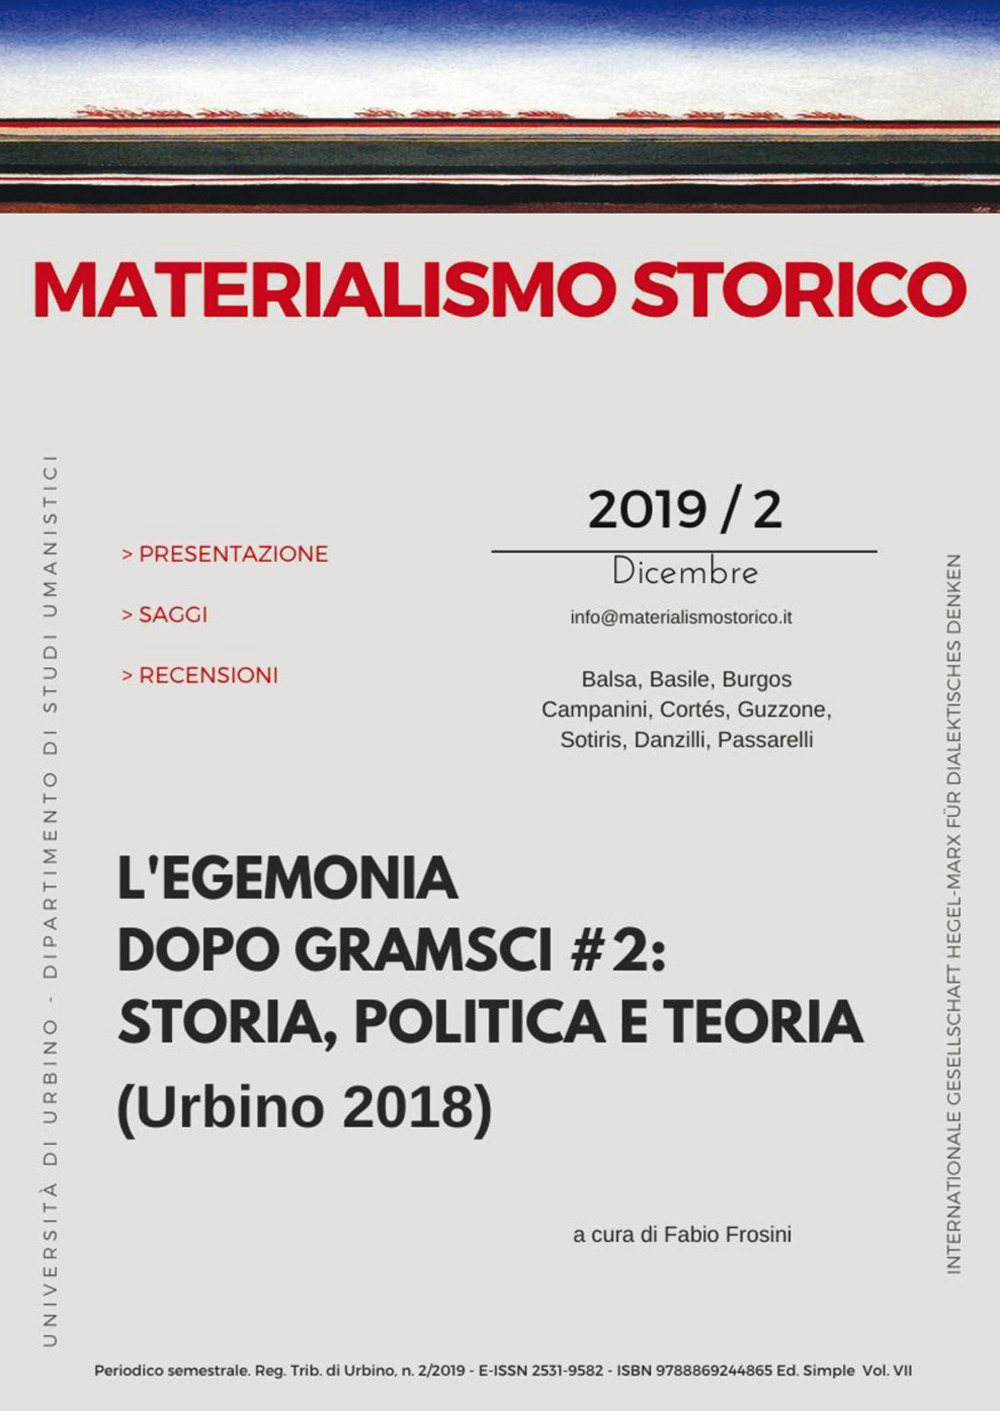 Image of Materialismo storico. Rivista di filosofia, storia e scienze umane (2019). Vol. 2: egemonia dopo Gramsci # 2: storia, politica e teoria (Urbino 2018), L'.